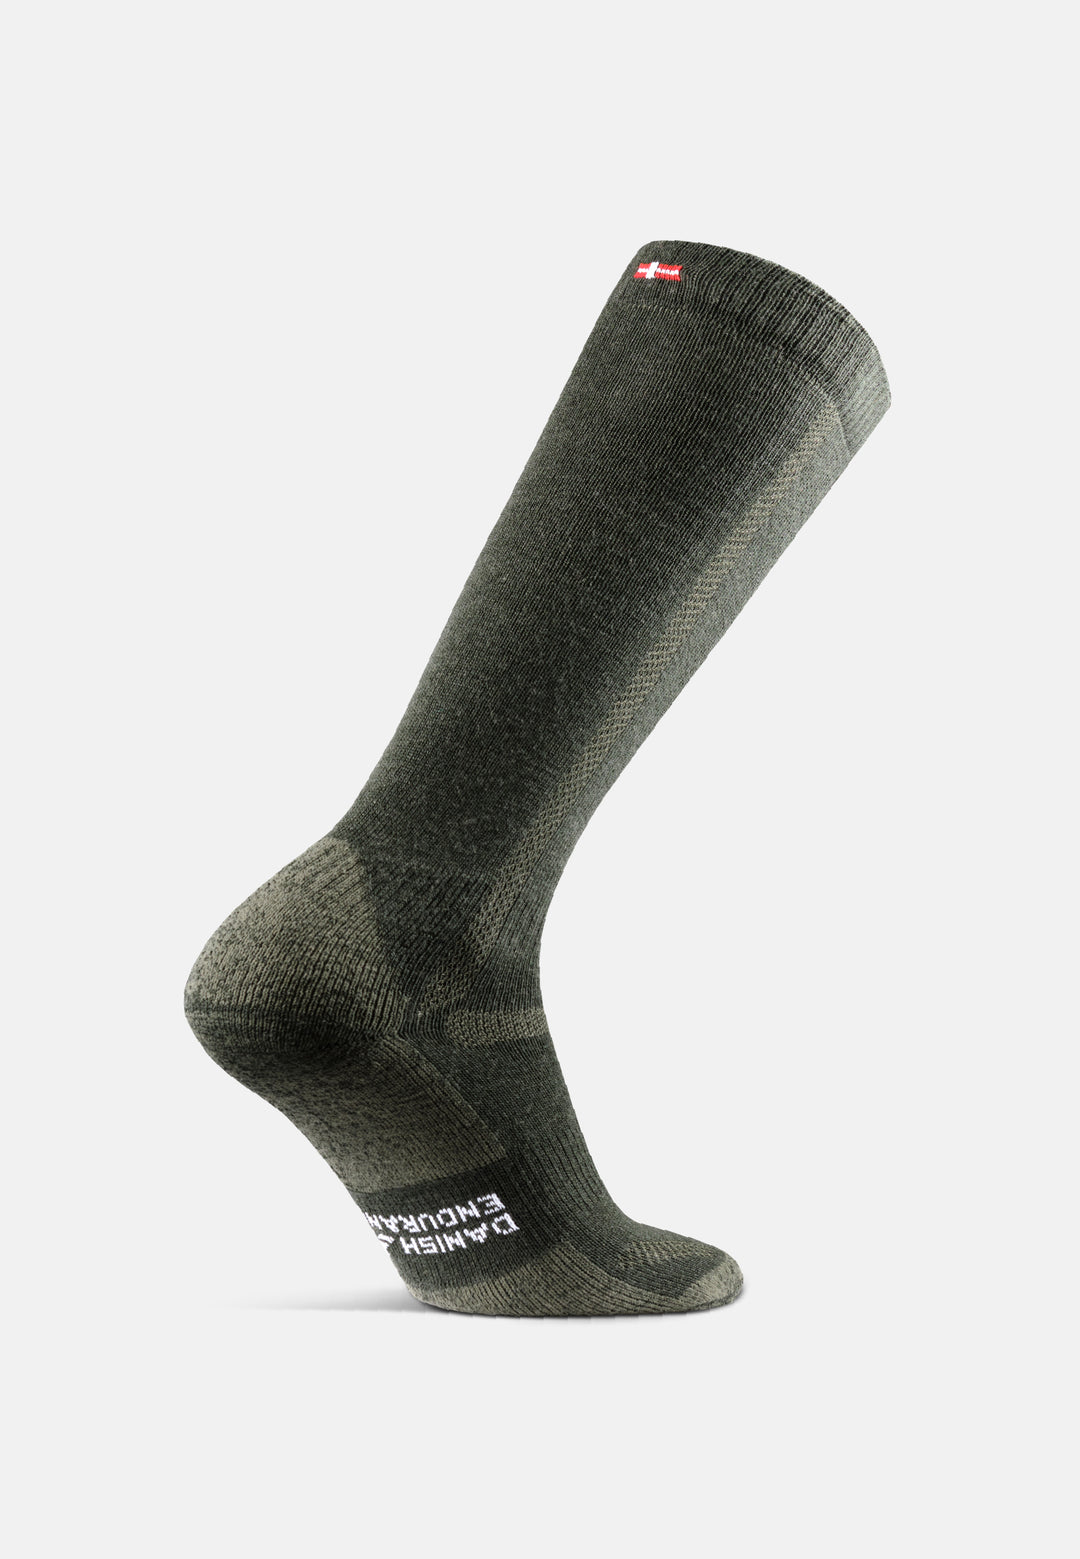 DANISH ENDURANCE 3-Pair Socks, Merino Wool, Antibacterial